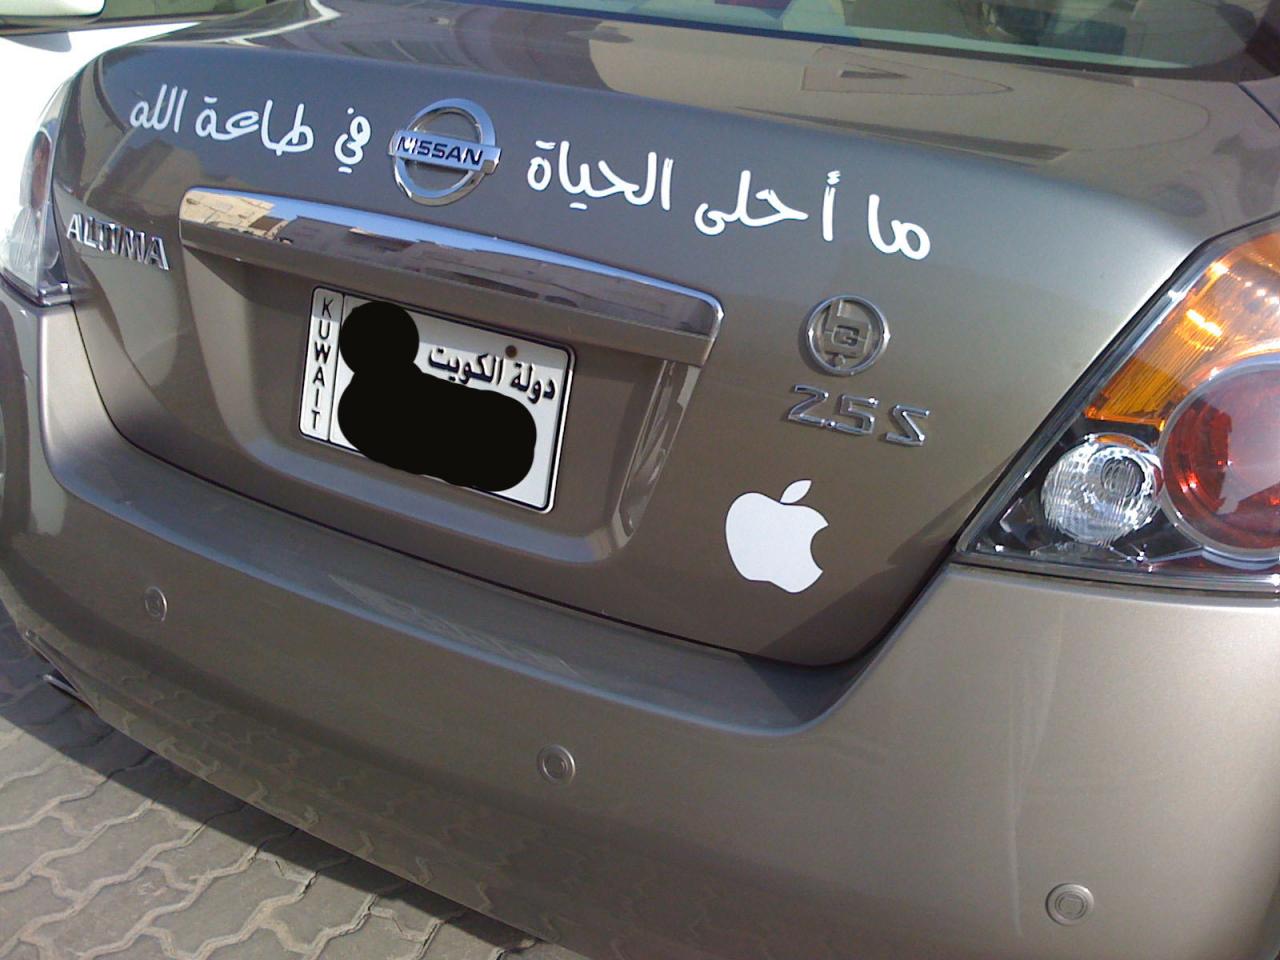 كتابة على السيارات عبارات وكلمات على العربيات فنجان قهوة